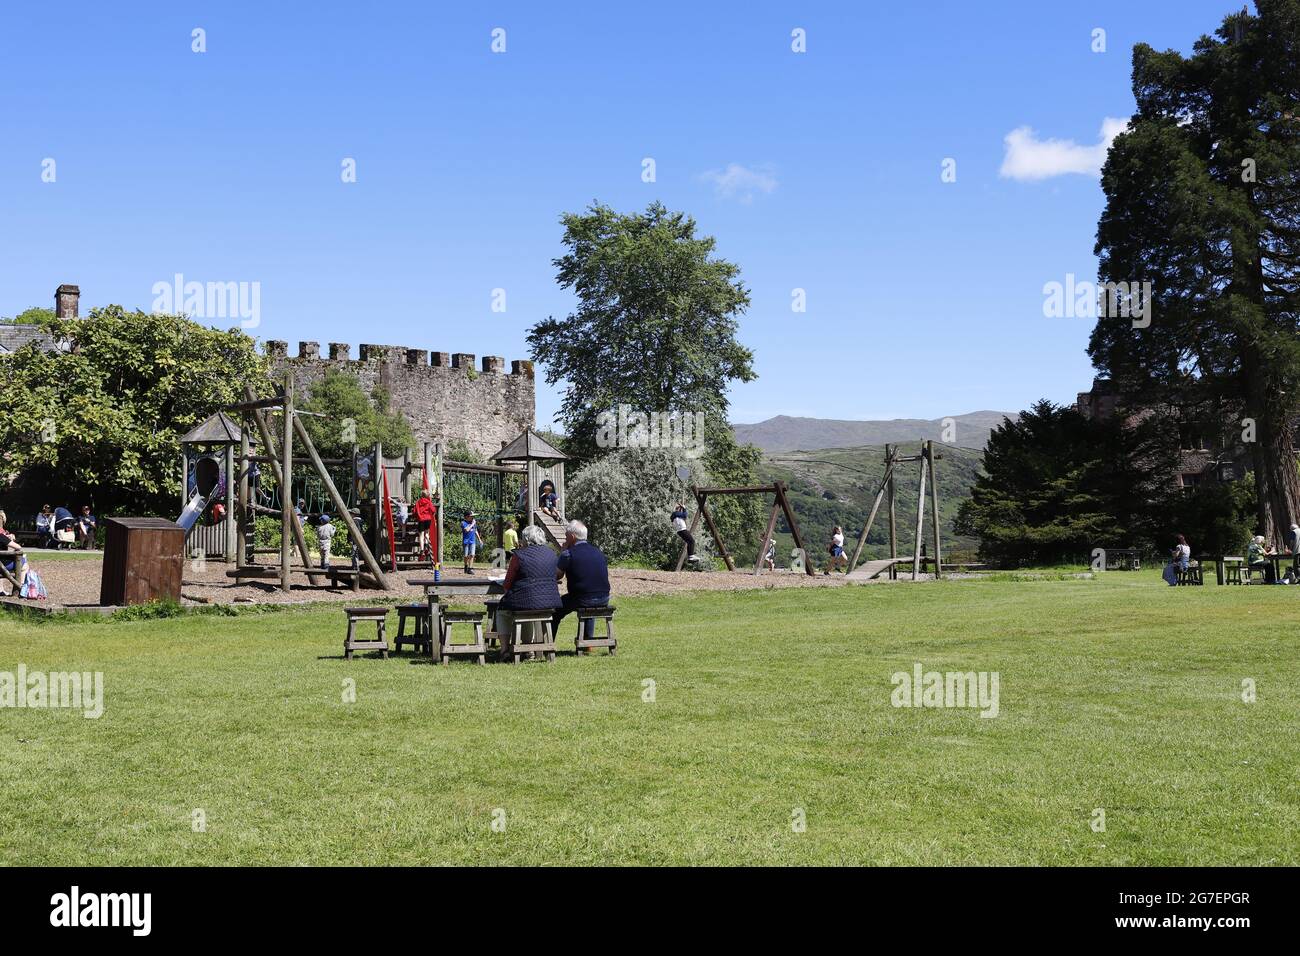 Childrens playground area at Muncaster Castle, Cumbria Stock Photo